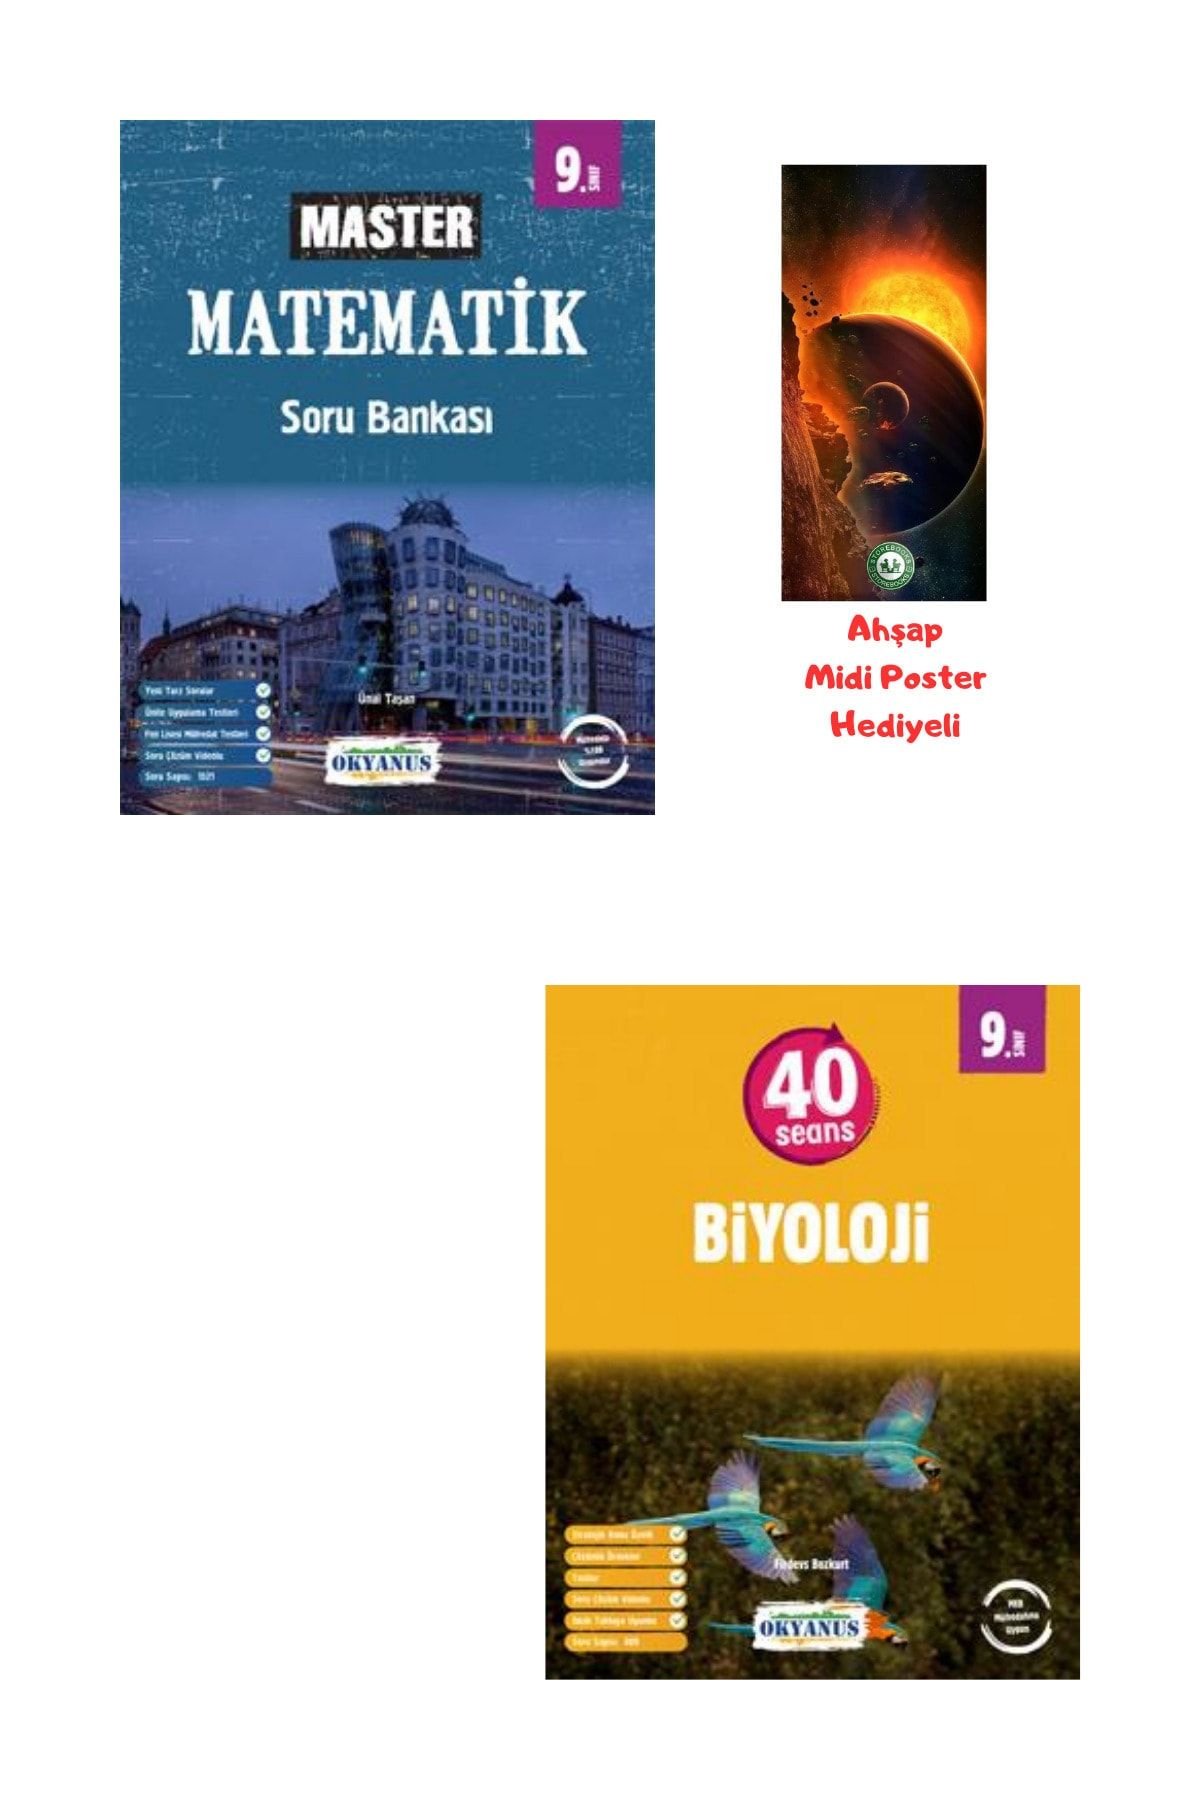 Okyanus Yayınları 9.Sınıf Master Matematik Soru Bankası ve 40 Seansta Biyoloji Ahşap Poster Hediyeli